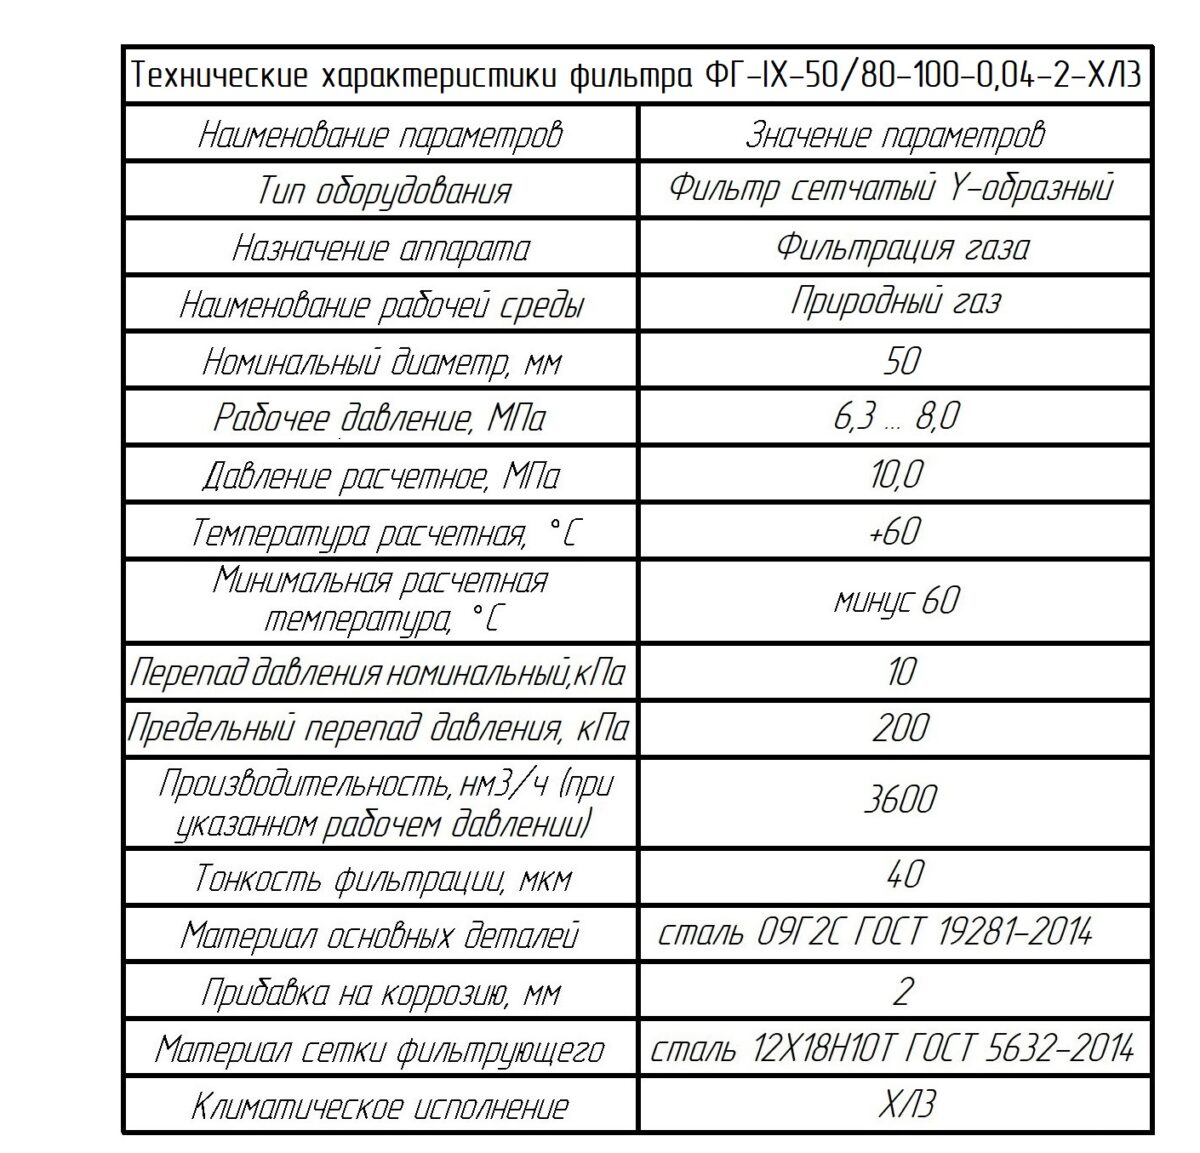 Фильтр для «Газпром СПГ технологии» в Татарстан с ДСП-160М1